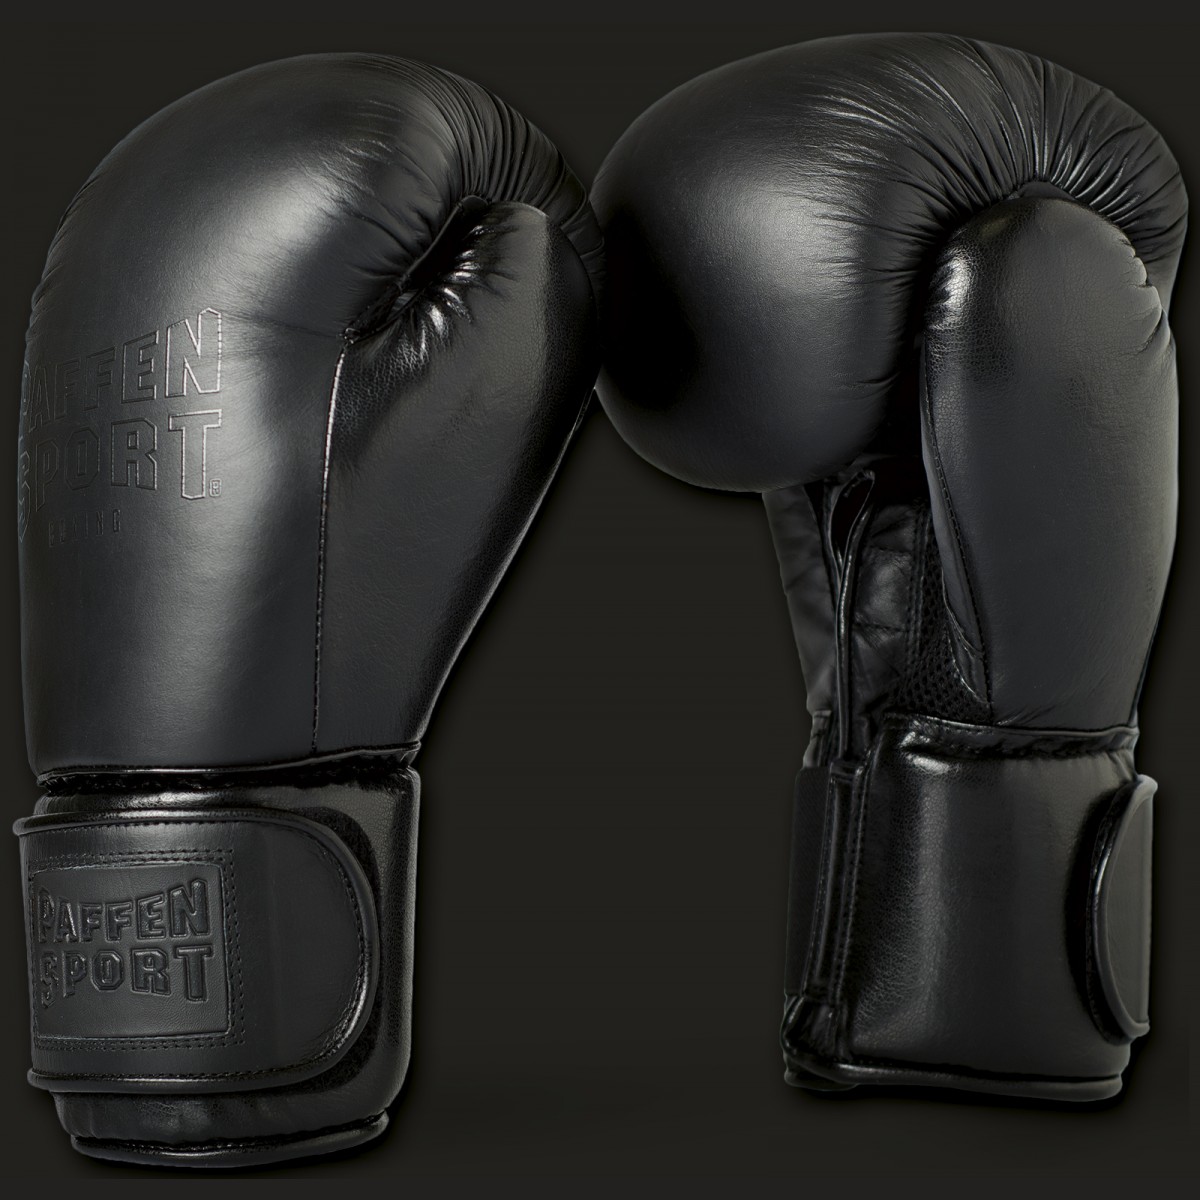 für das Boxhandschuhe K1-Kampfsportartikel Sport Logo Black Paffen | Sparring